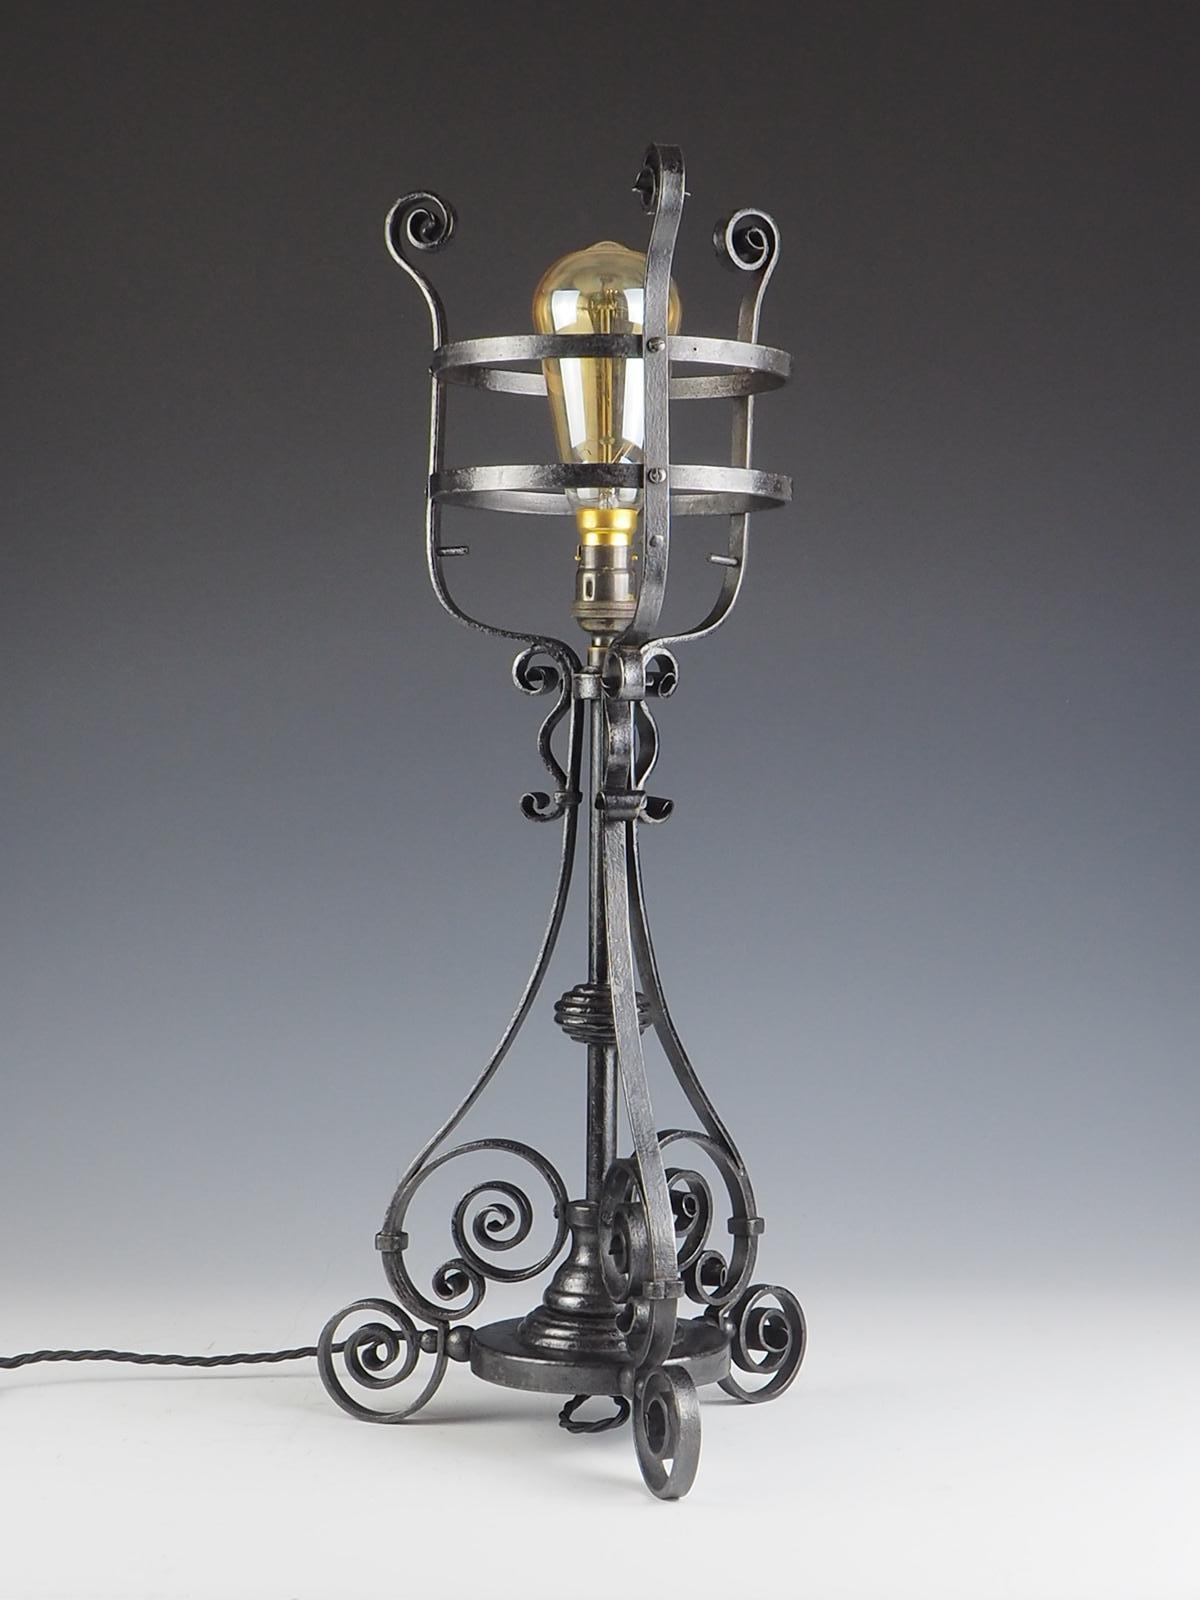 Lampe de table en fer forgé Arts & Crafts

Magnifique lampe de maison de campagne forgée à la main avec des détails de volutes ornées et une lumière étonnante derrière un cadre en fer forgé fermé.

Très bien réalisée, chaque volute s'élargit jusqu'à